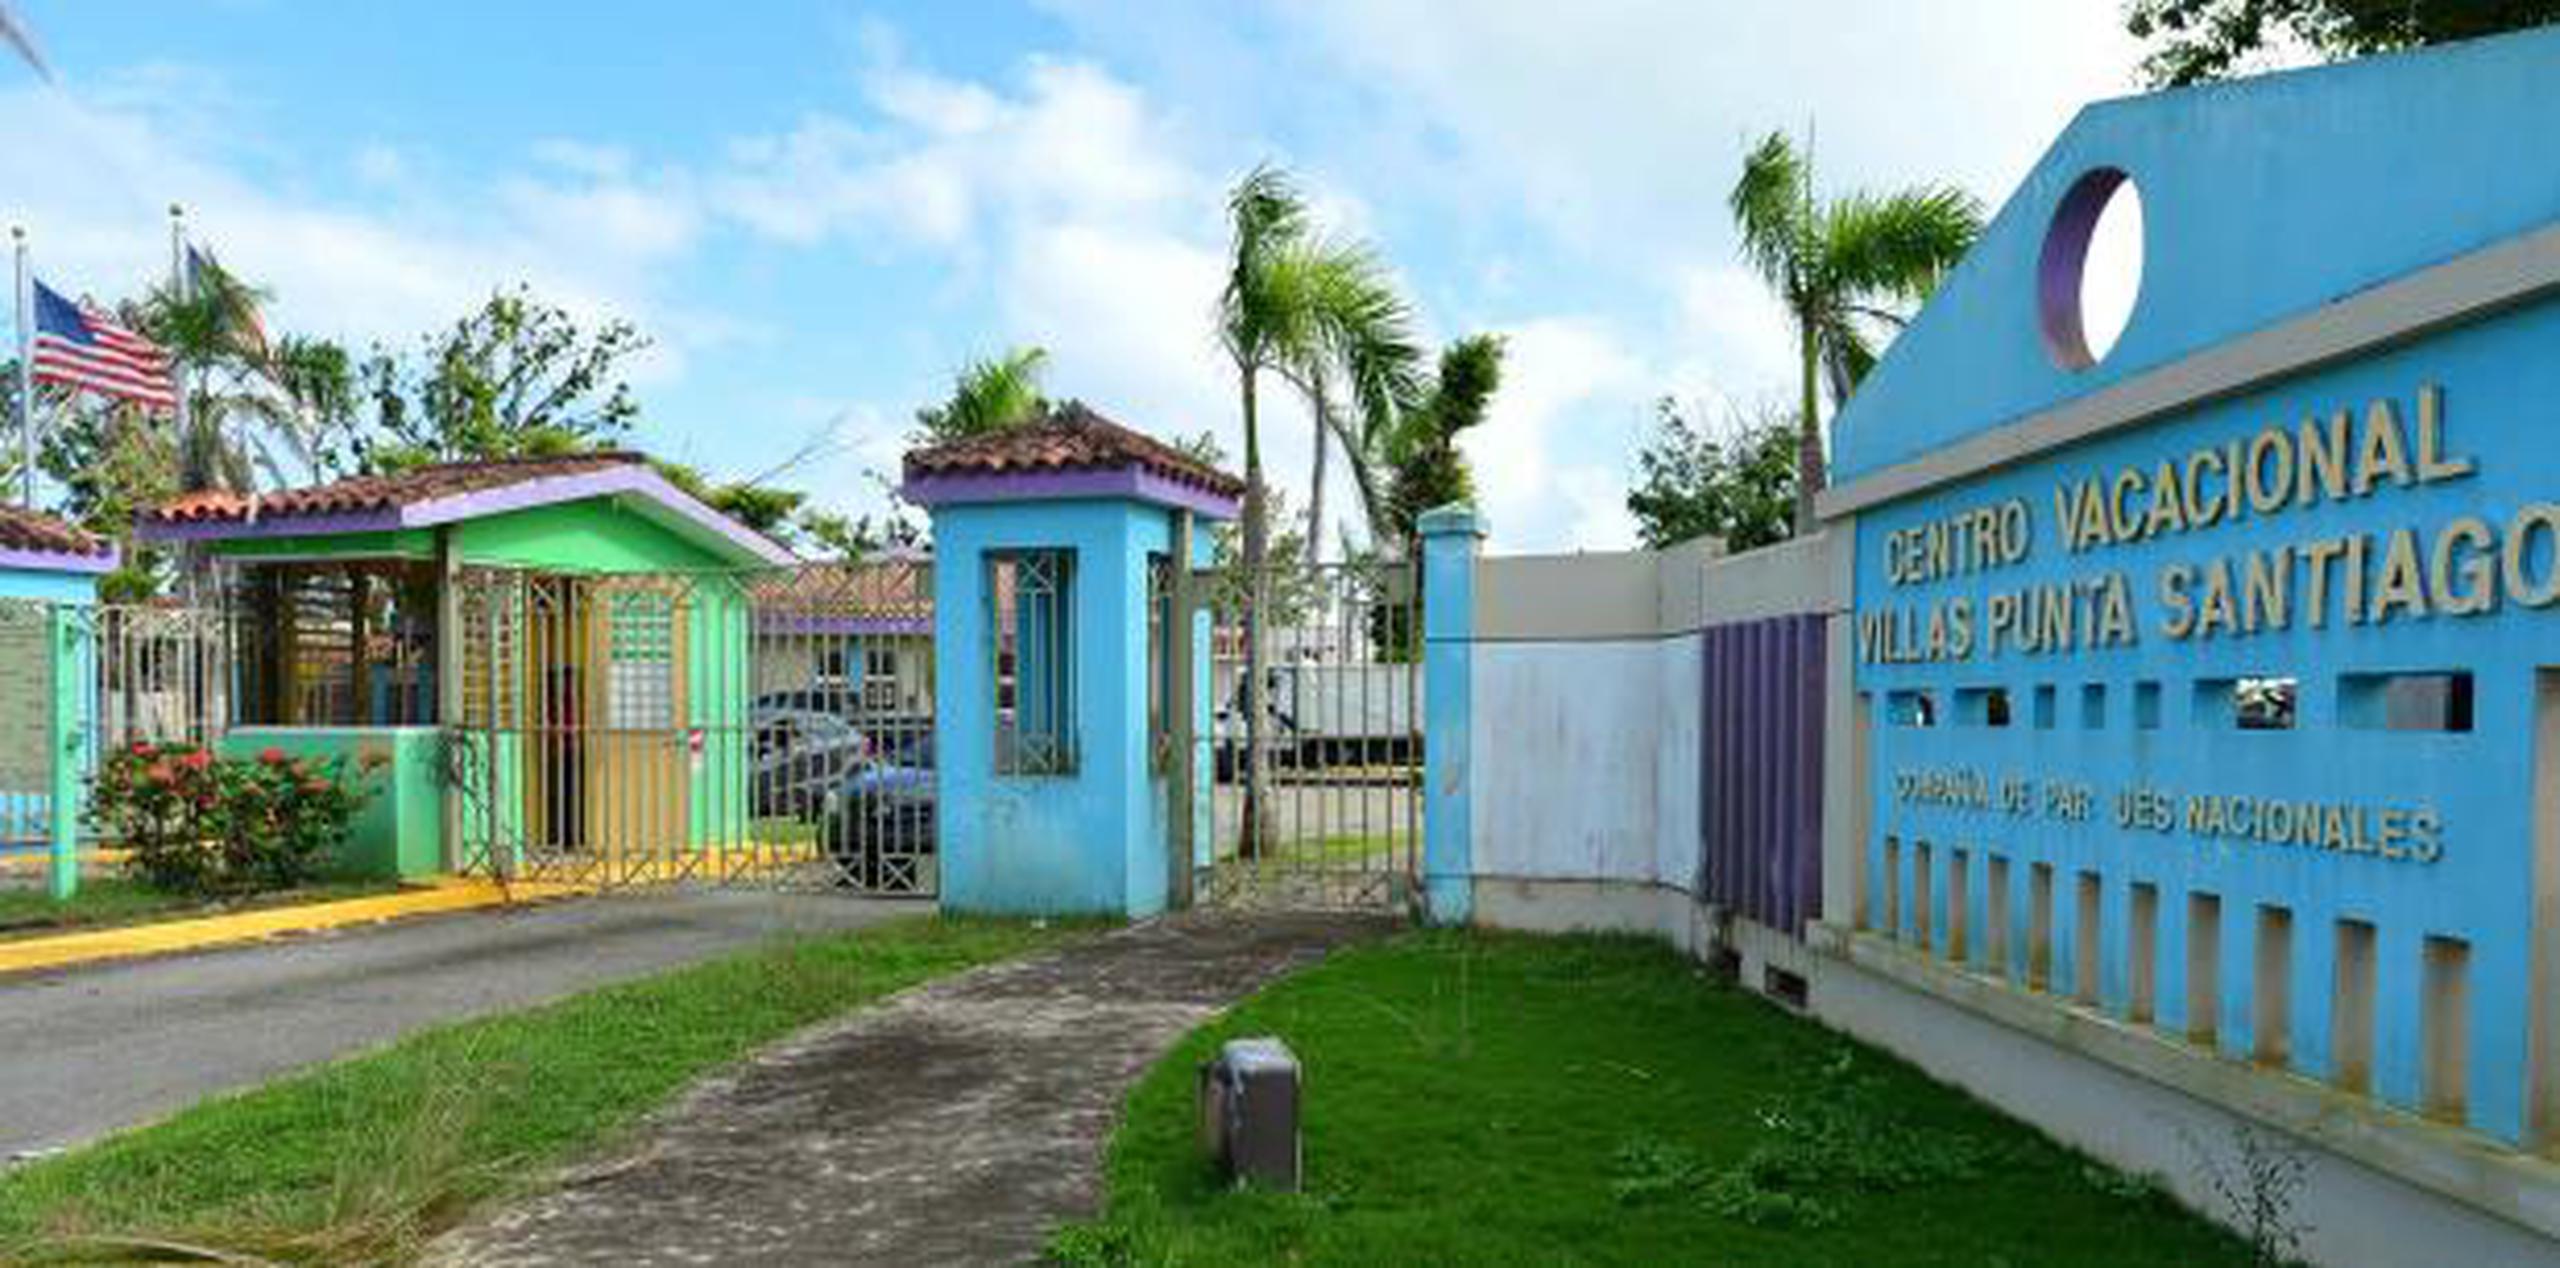 Fachada de la entrada del Centro Vacacional Punta Santiago, en Humacao. (Archivo)